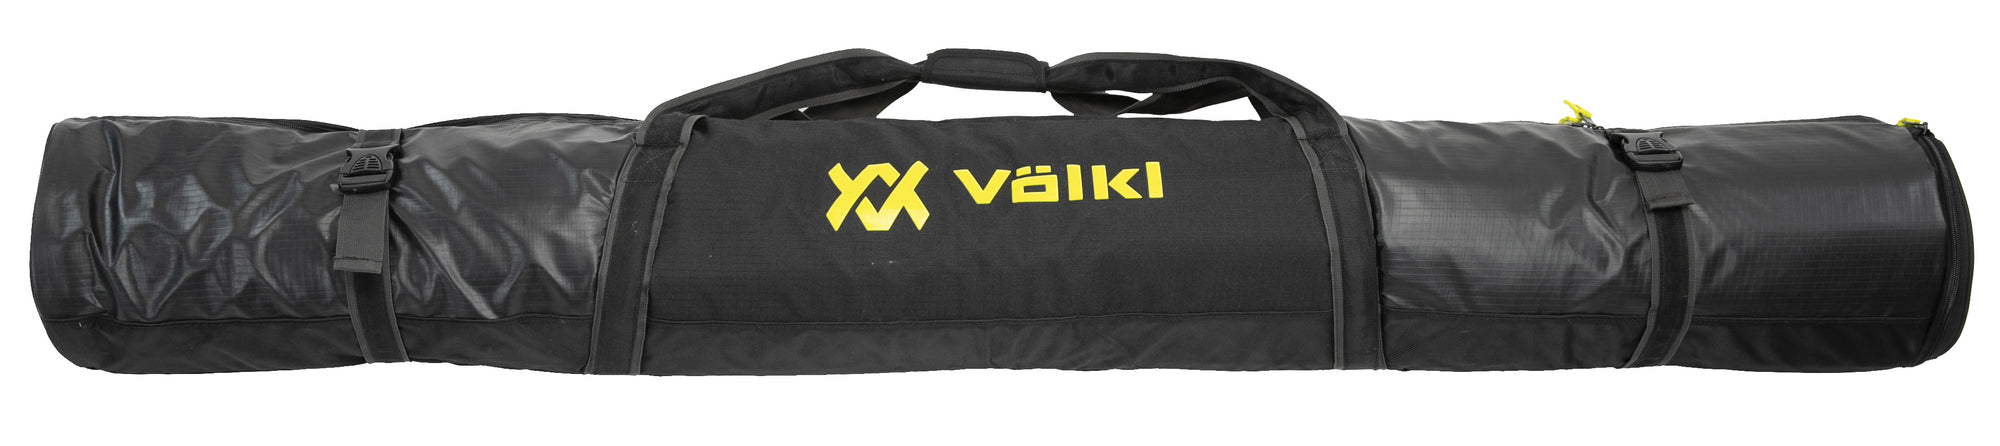 Volkl Single Ski Bag 170cm - Black